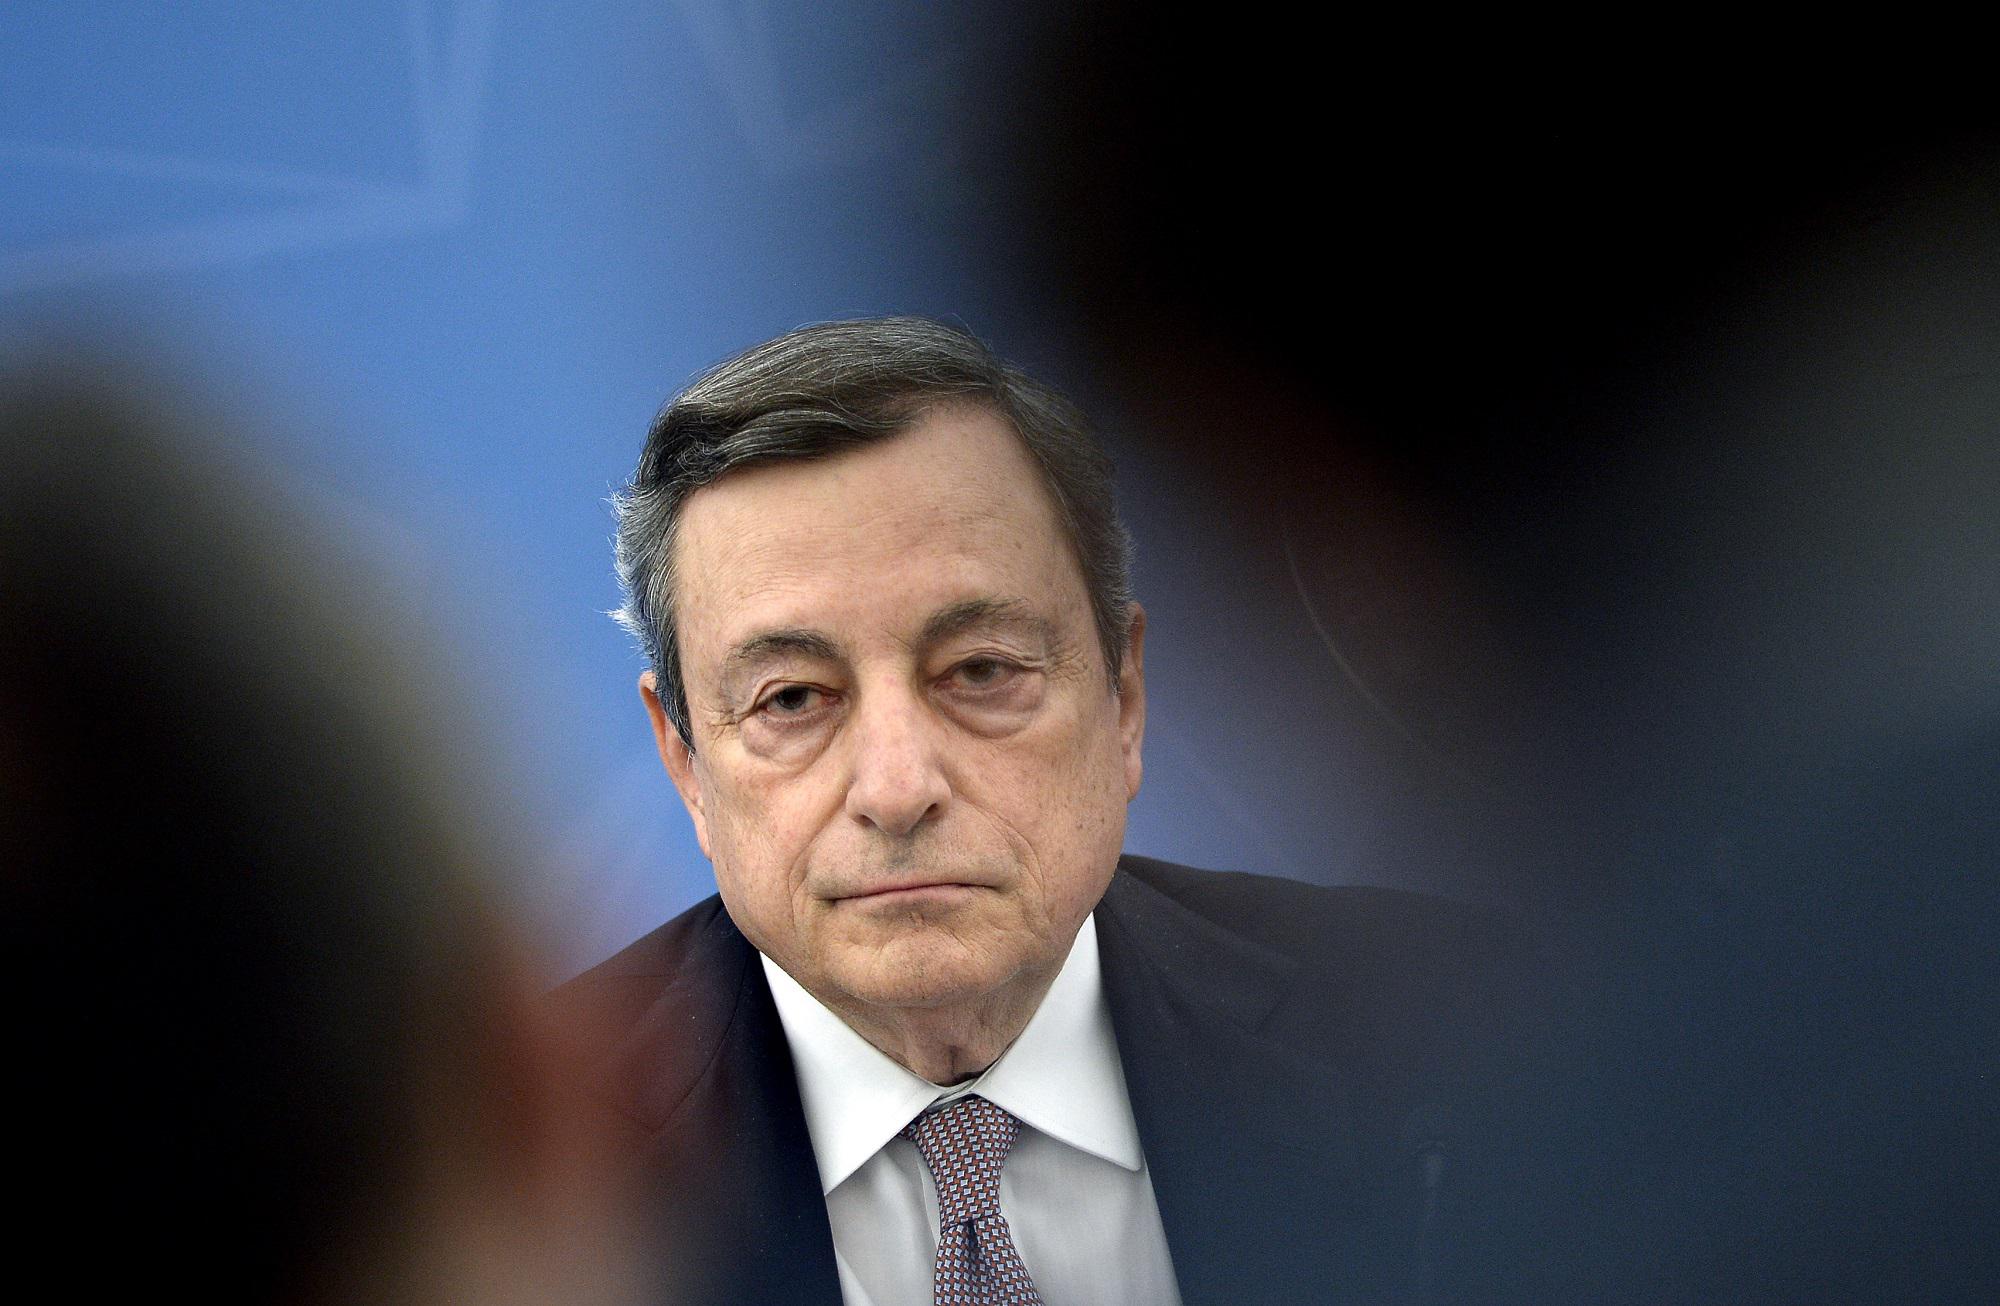 Effetto del discorso di Draghi? Ha sollevato il livello della campagna elettorale